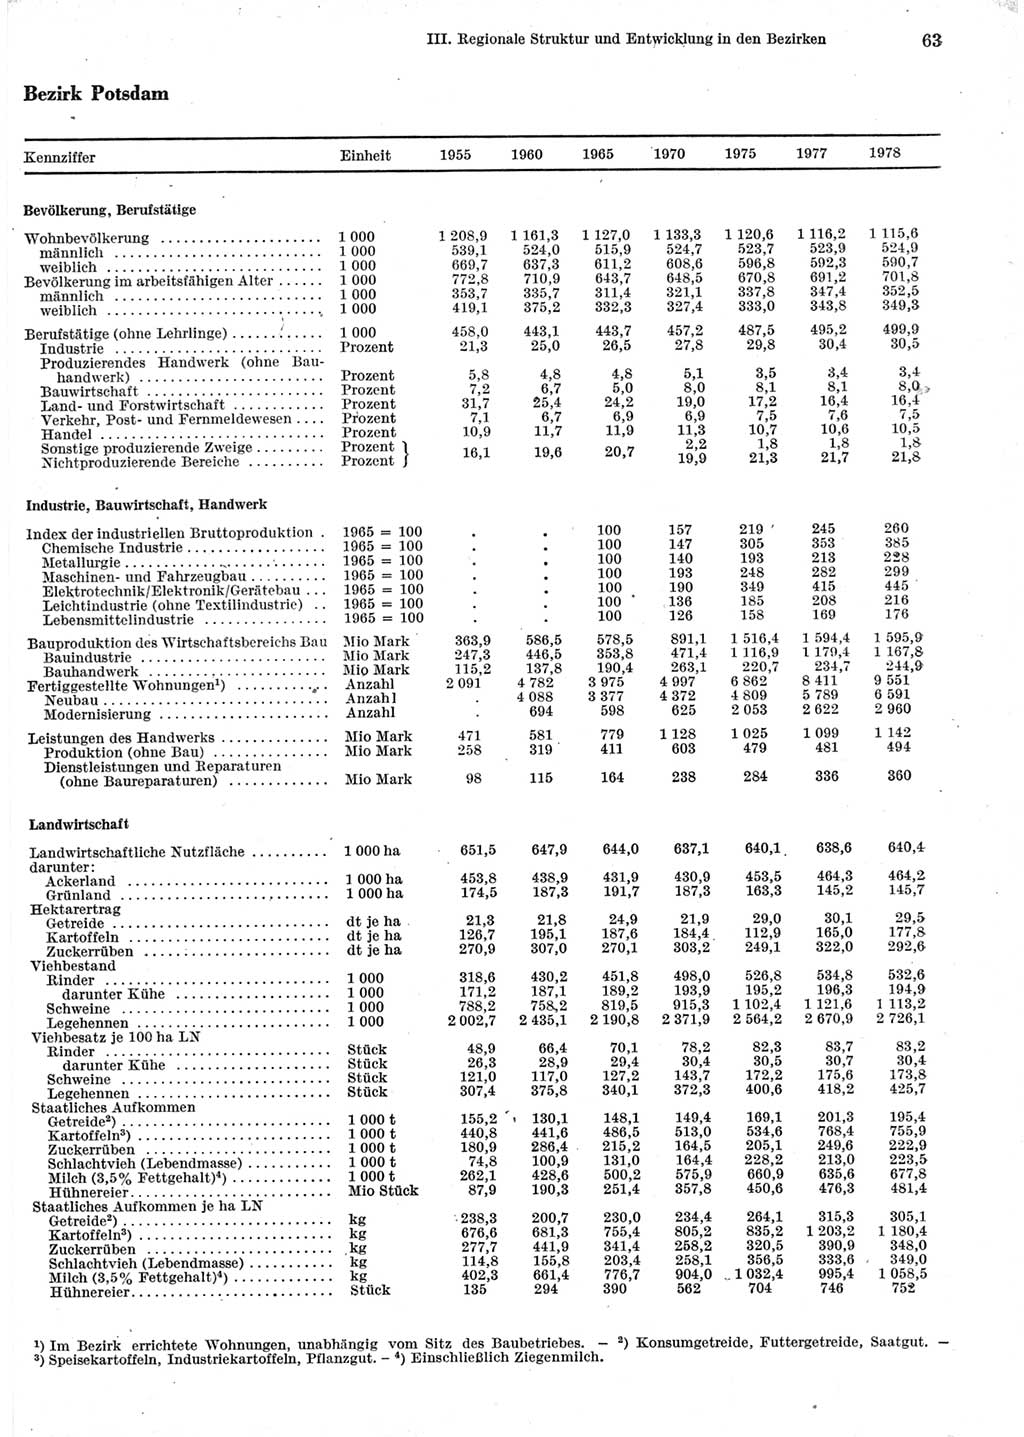 Statistisches Jahrbuch der Deutschen Demokratischen Republik (DDR) 1979, Seite 63 (Stat. Jb. DDR 1979, S. 63)